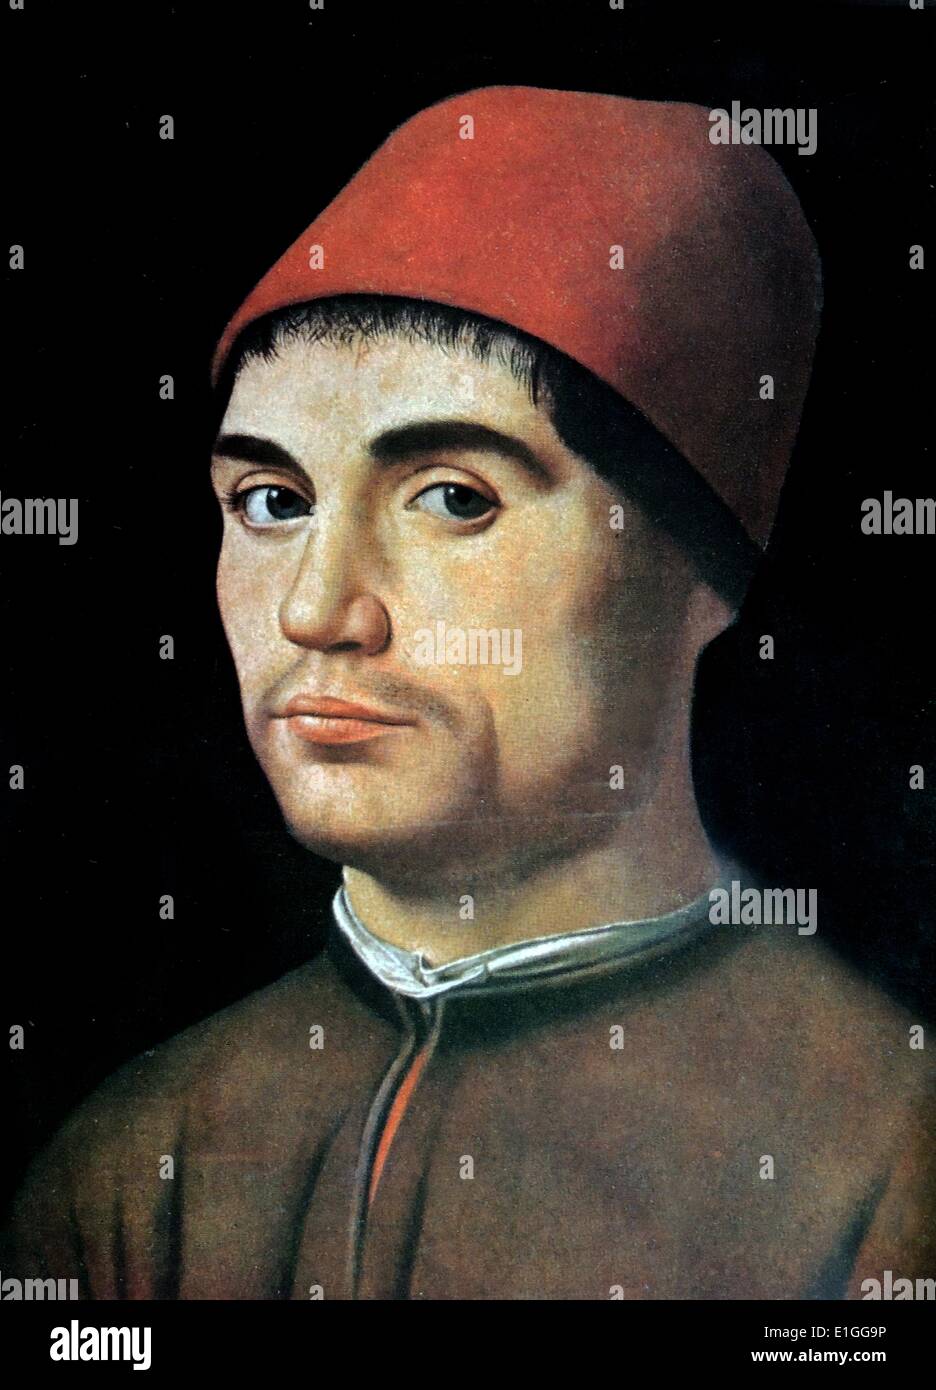 Un busto portriat de un joven hombre que llevaba una gorra roja y marrón doblete. El retrato se piensa para haber sido un autorretrato del artista. Por Antonello da Messina (1444 - 1493), un pintor italiano de Messina y miembro de la escuela veneciana. Fecha del siglo XV. Foto de stock